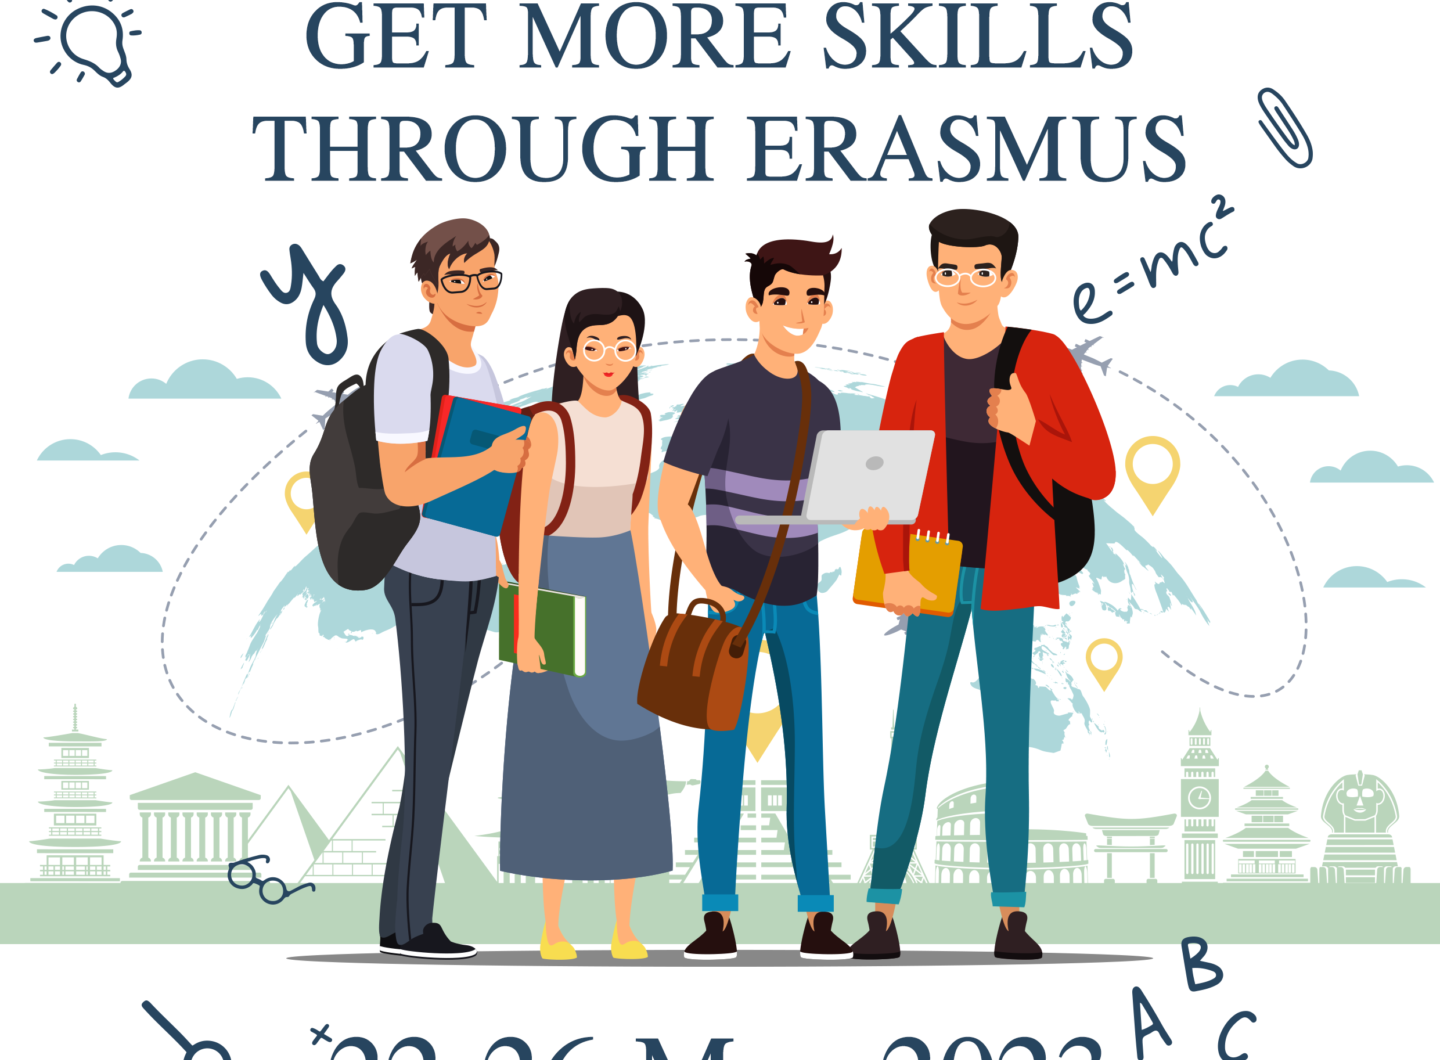 Erasmus Get More Skills Through Erasmus Afis